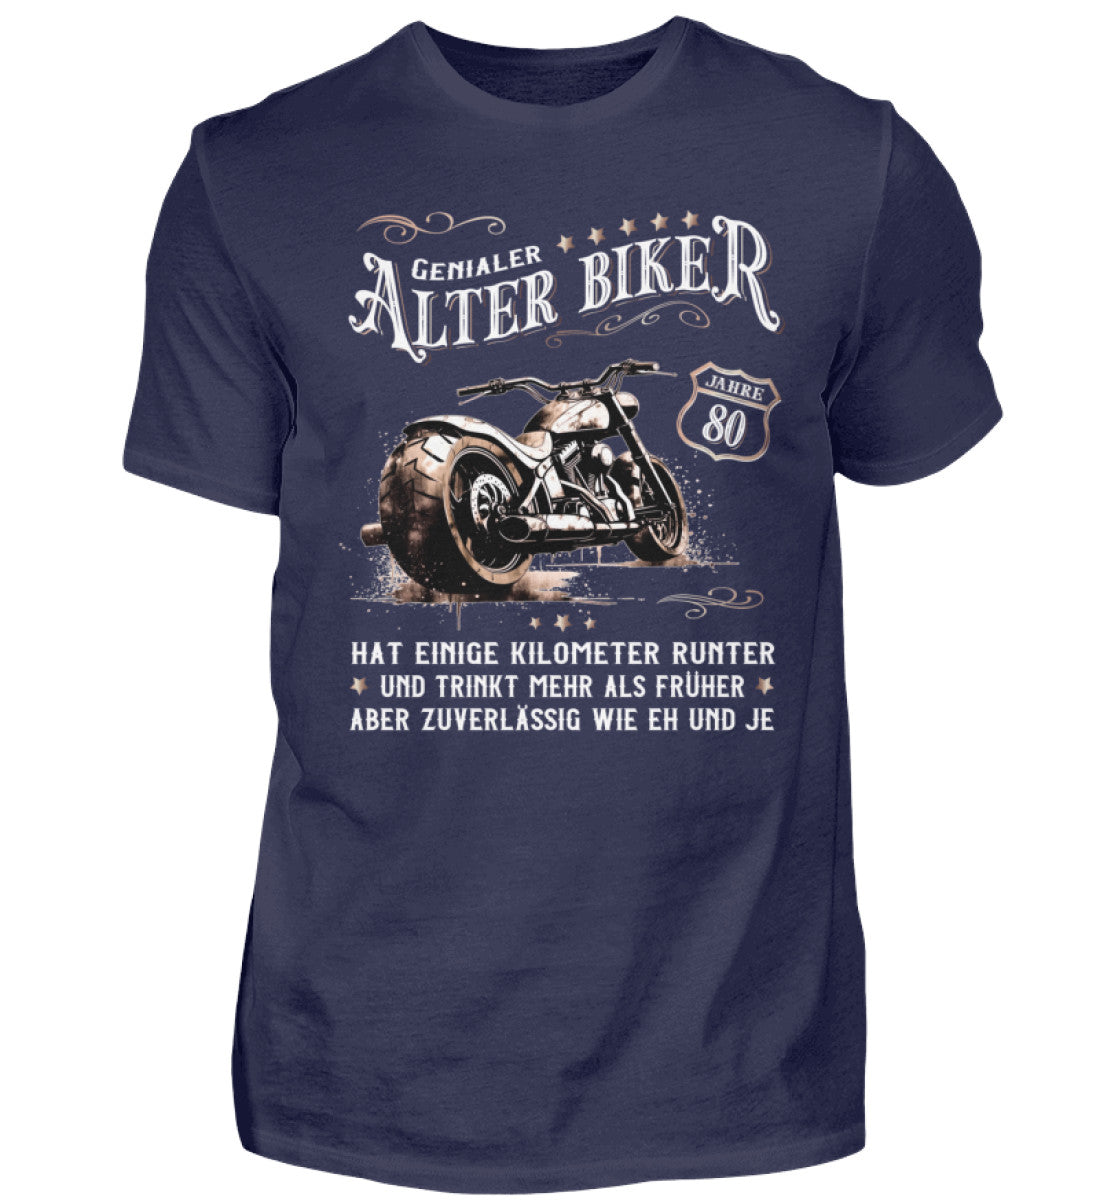 Ein Biker T-Shirt zum Geburtstag für Motorradfahrer von Wingbikers mit dem Aufdruck, Alter Biker - 80 Jahre - Einige Kilometer runter, trinkt mehr - aber zuverlässig wie eh und je - in navy blau.